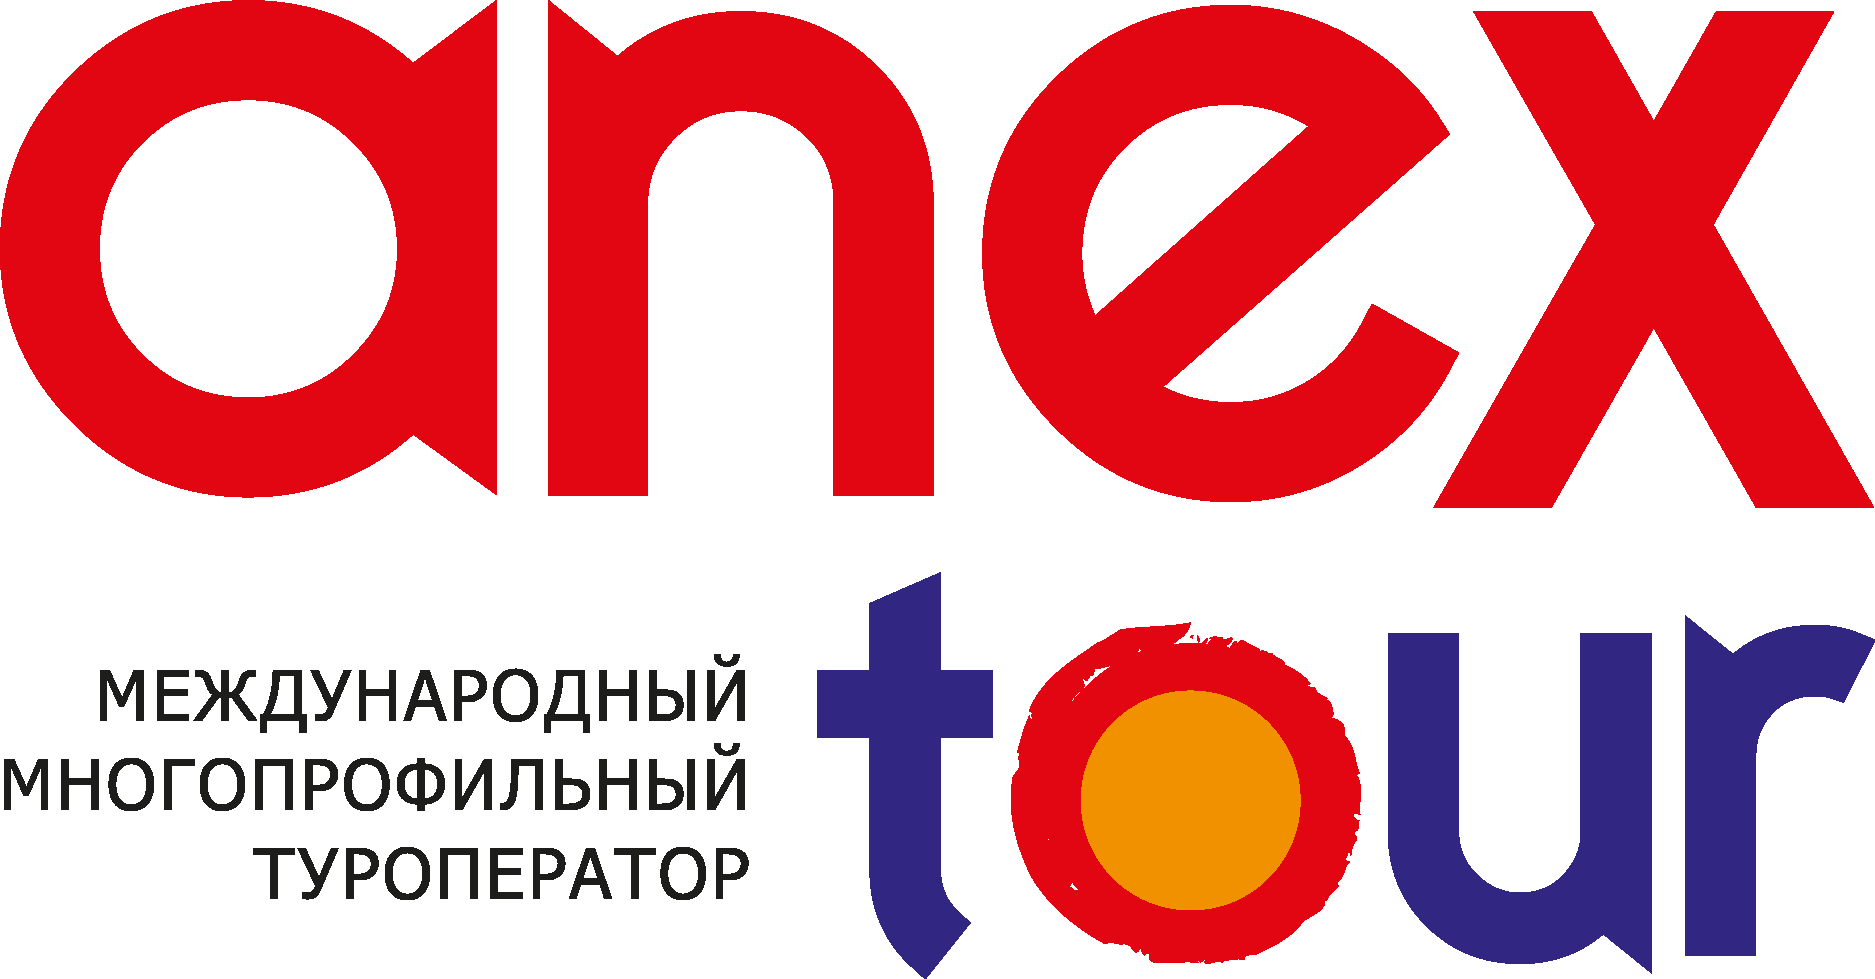 anex tour logo png